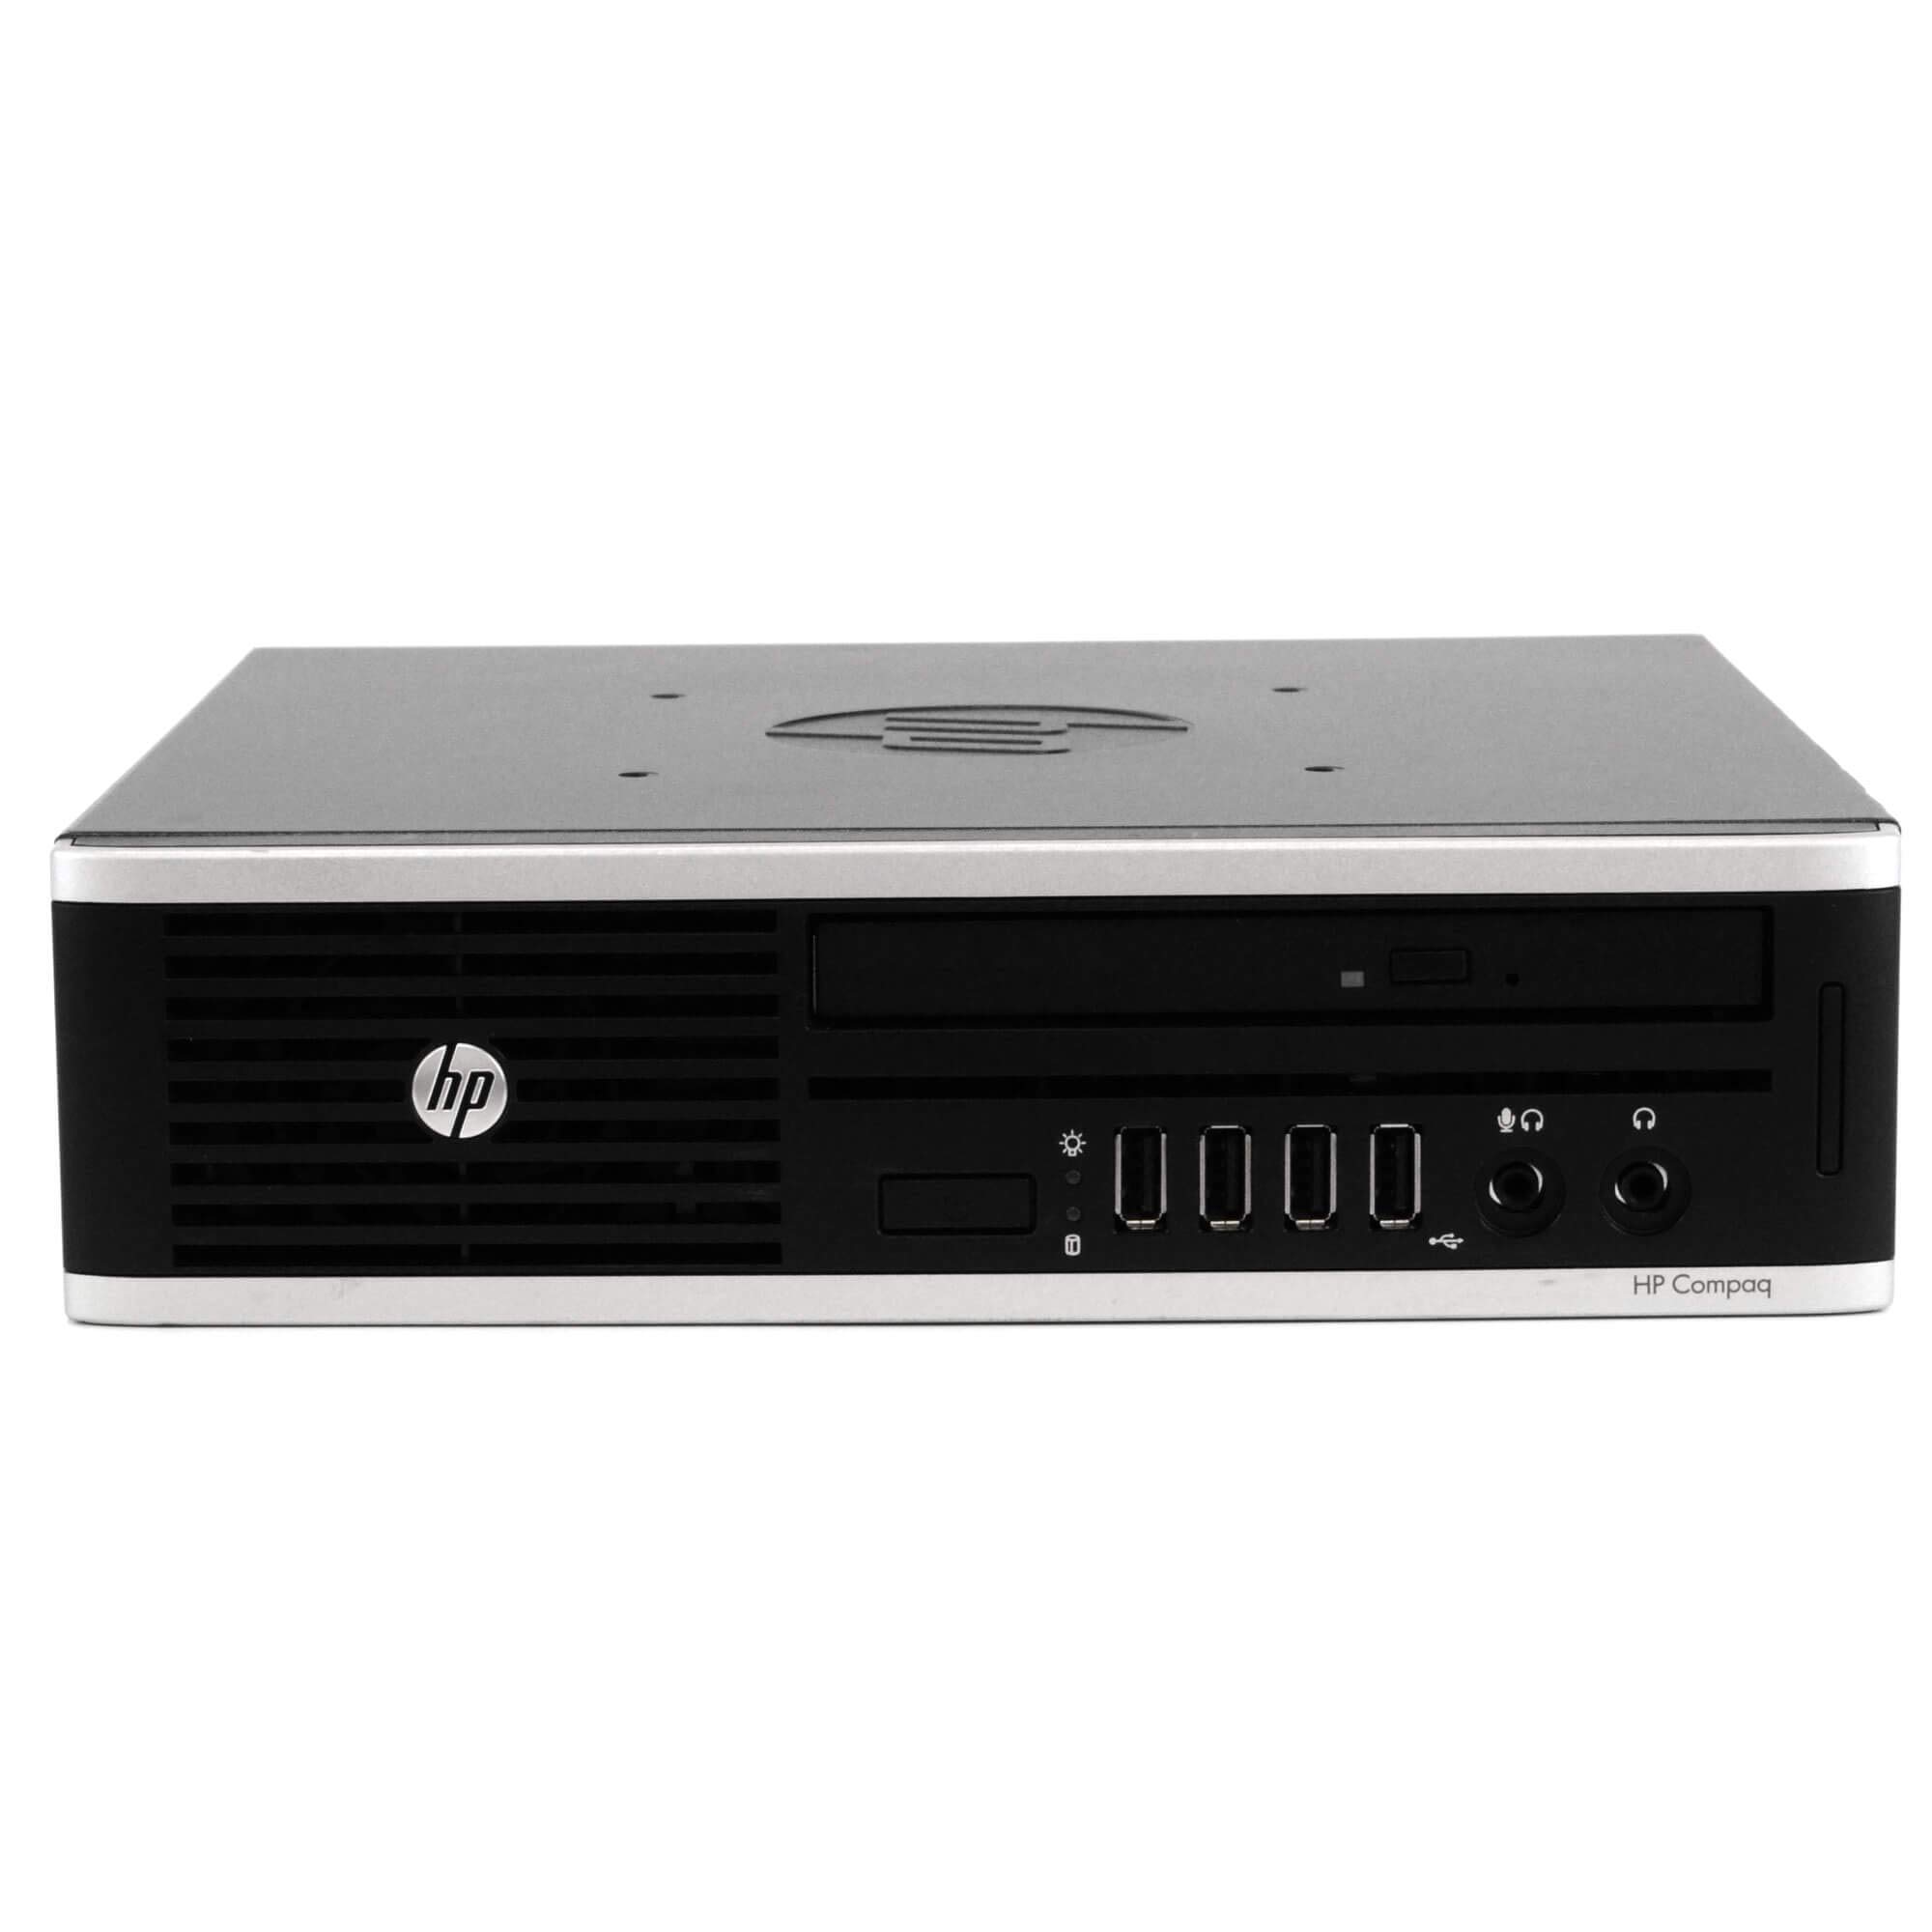 HP 8300 Ultra Small Desktop Computer PC,16GB RAM, 1TB SSD Hard Drive, Wi-Fi (Renewed)